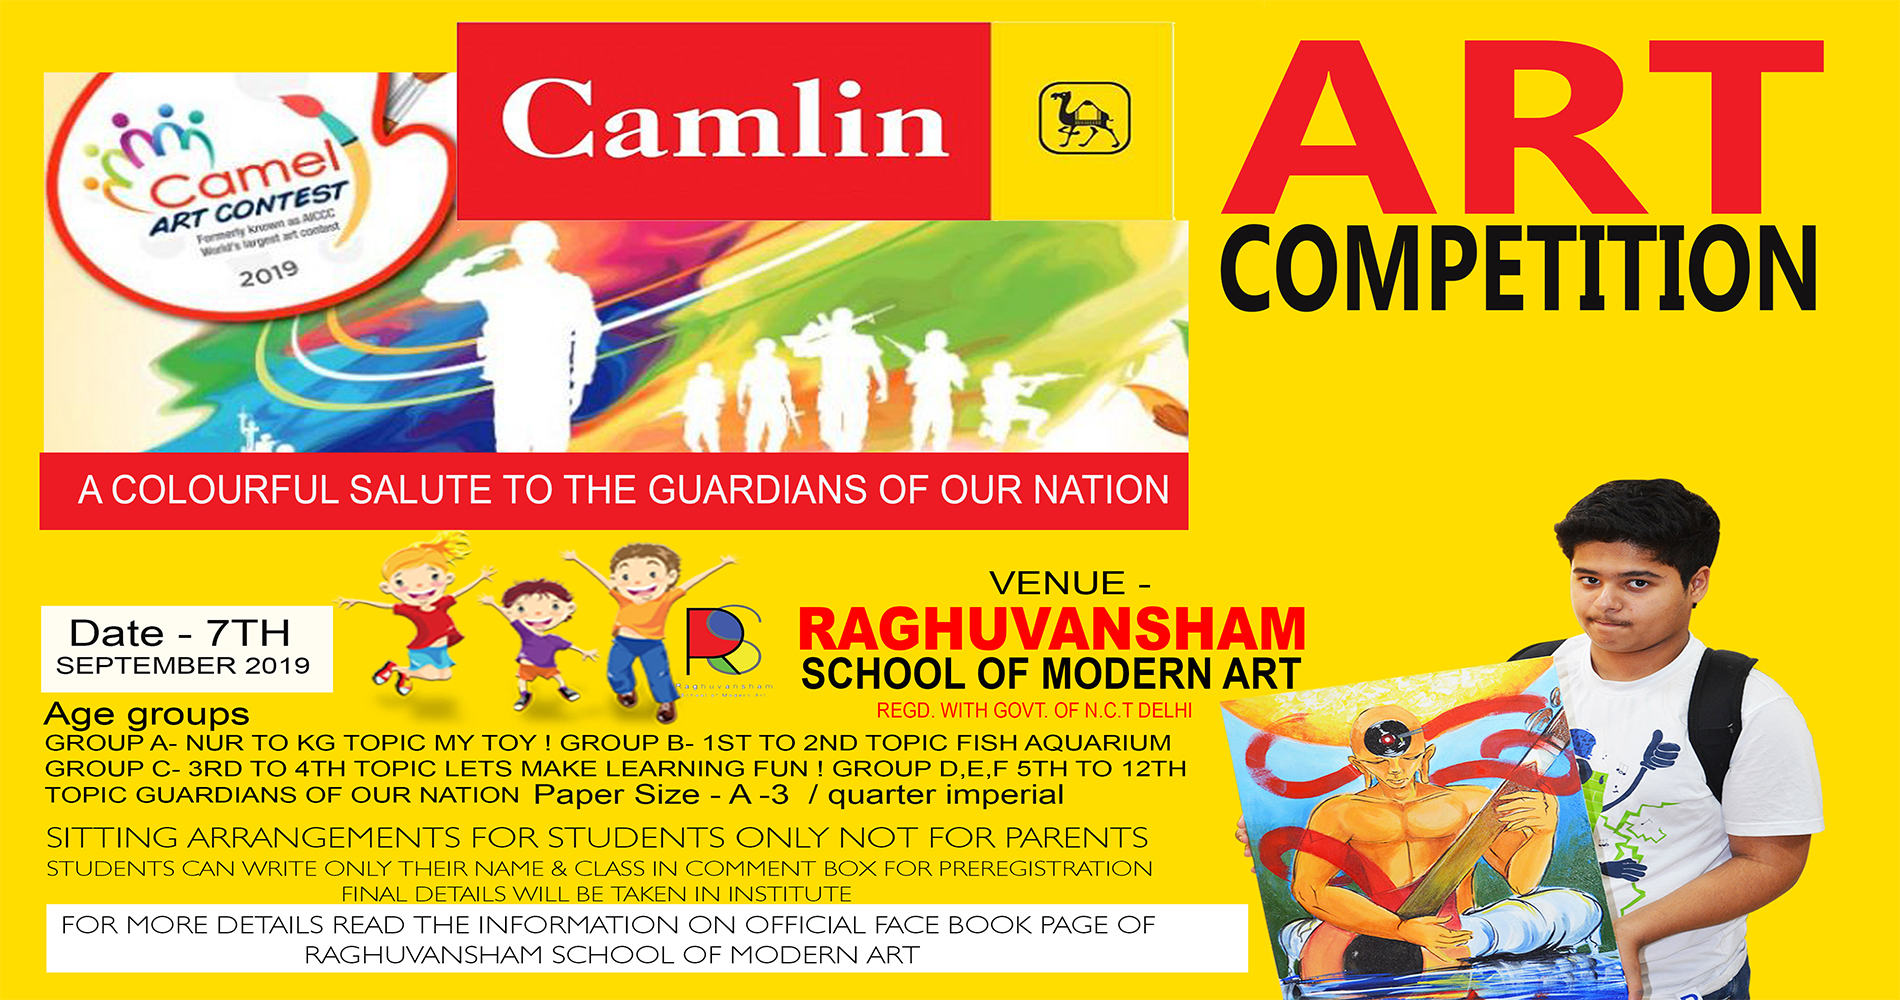 Camlin Art Competition 2019, North West Delhi, Delhi, India